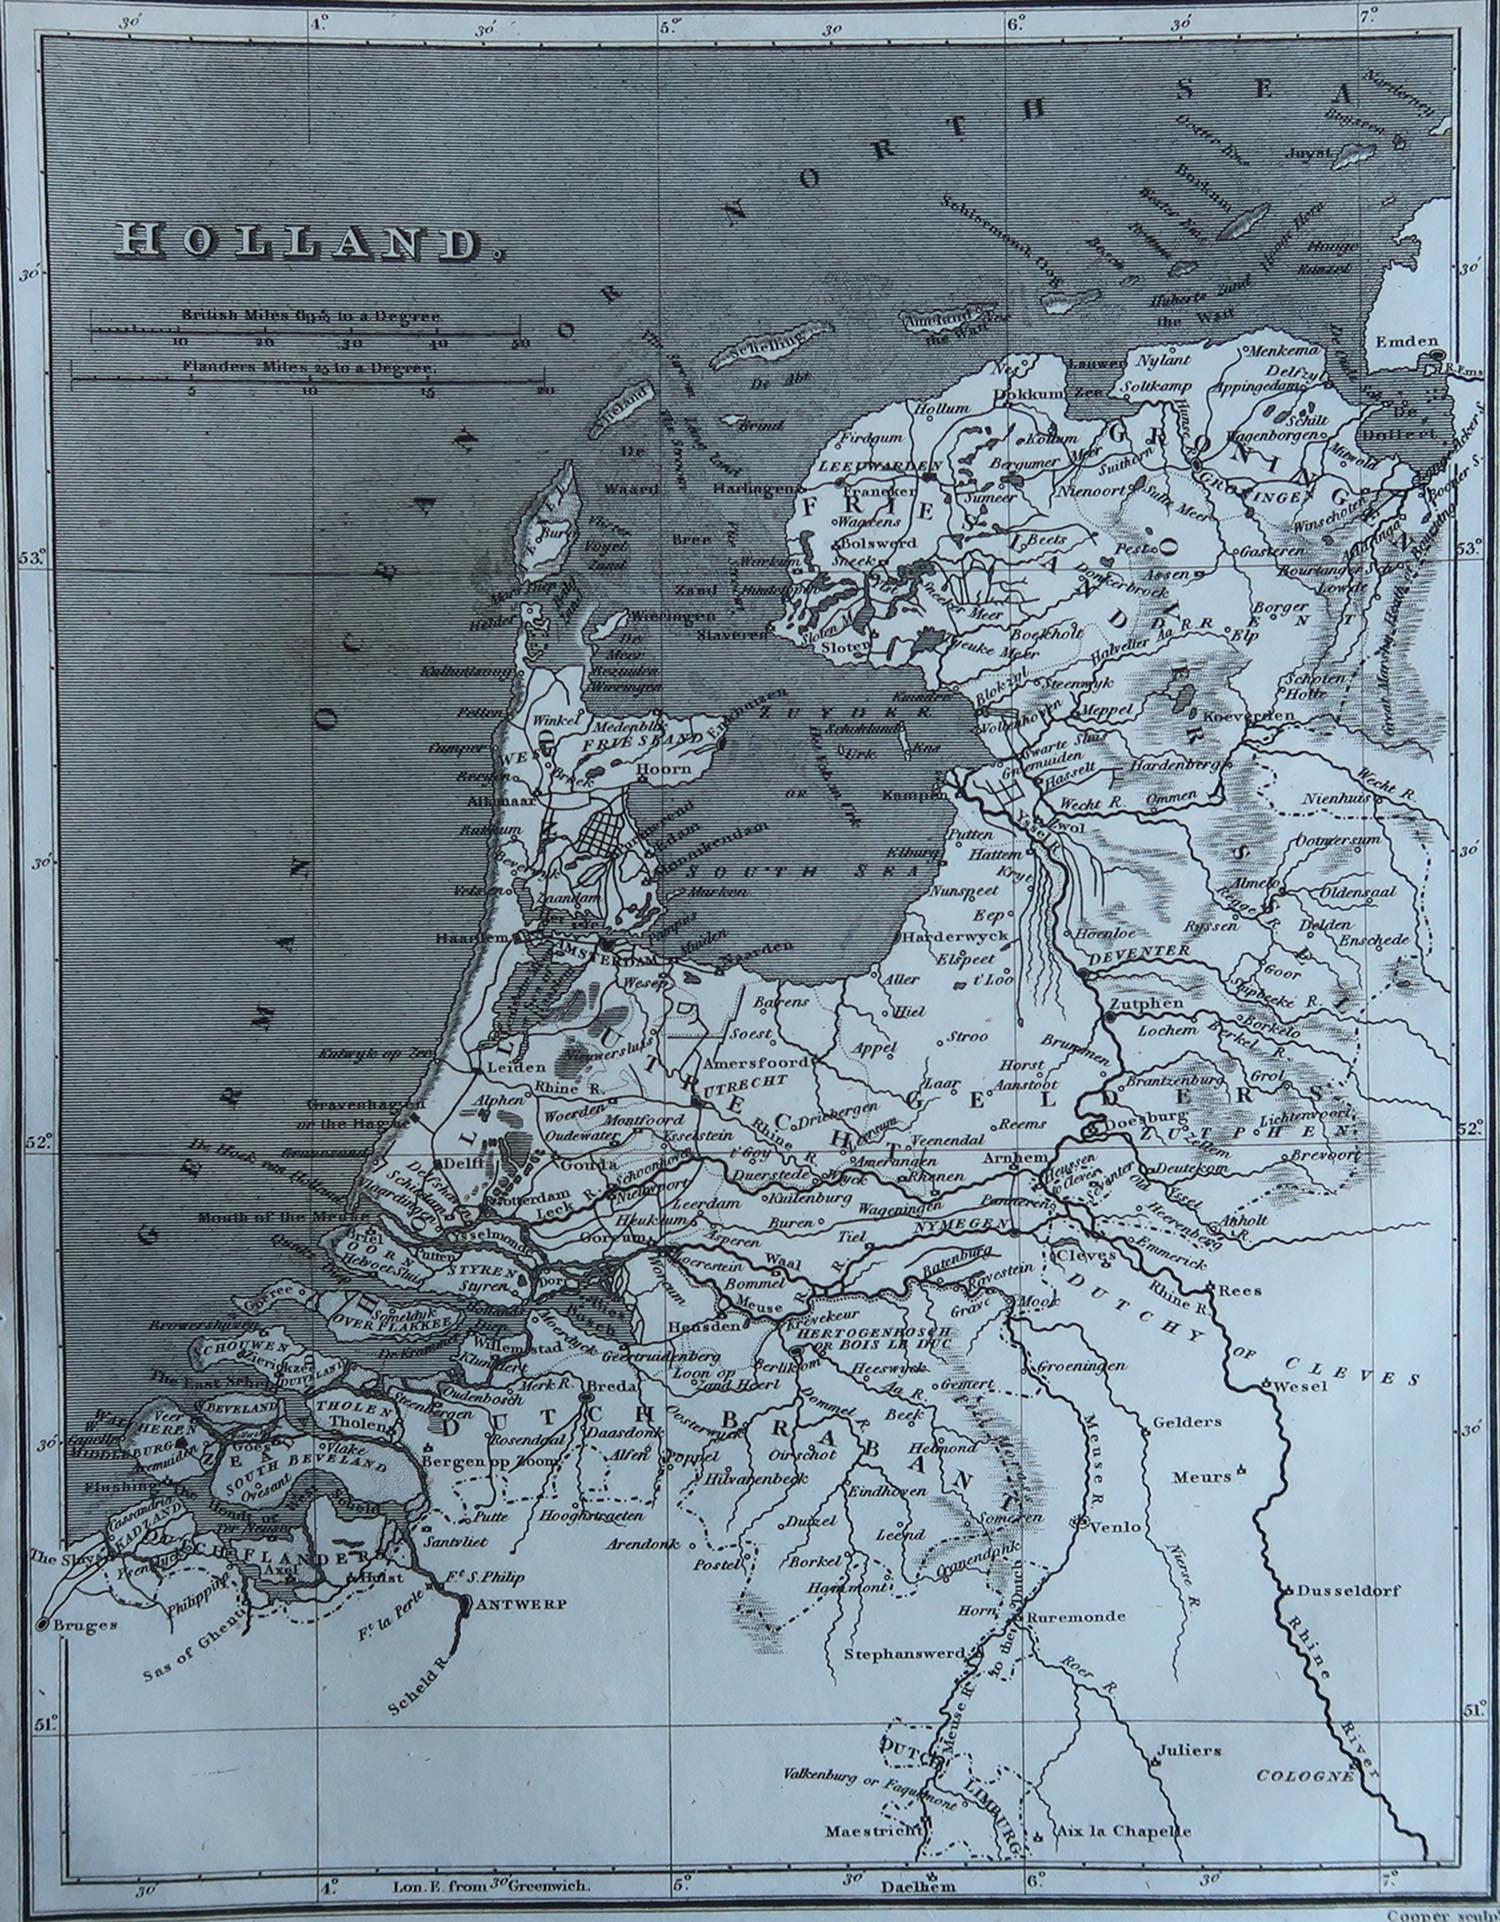 Grande carte des Pays-Bas

Gravure sur cuivre de Cooper

Publié par Sherwood, Neely & Jones.

Daté de 1809

Non encadré.